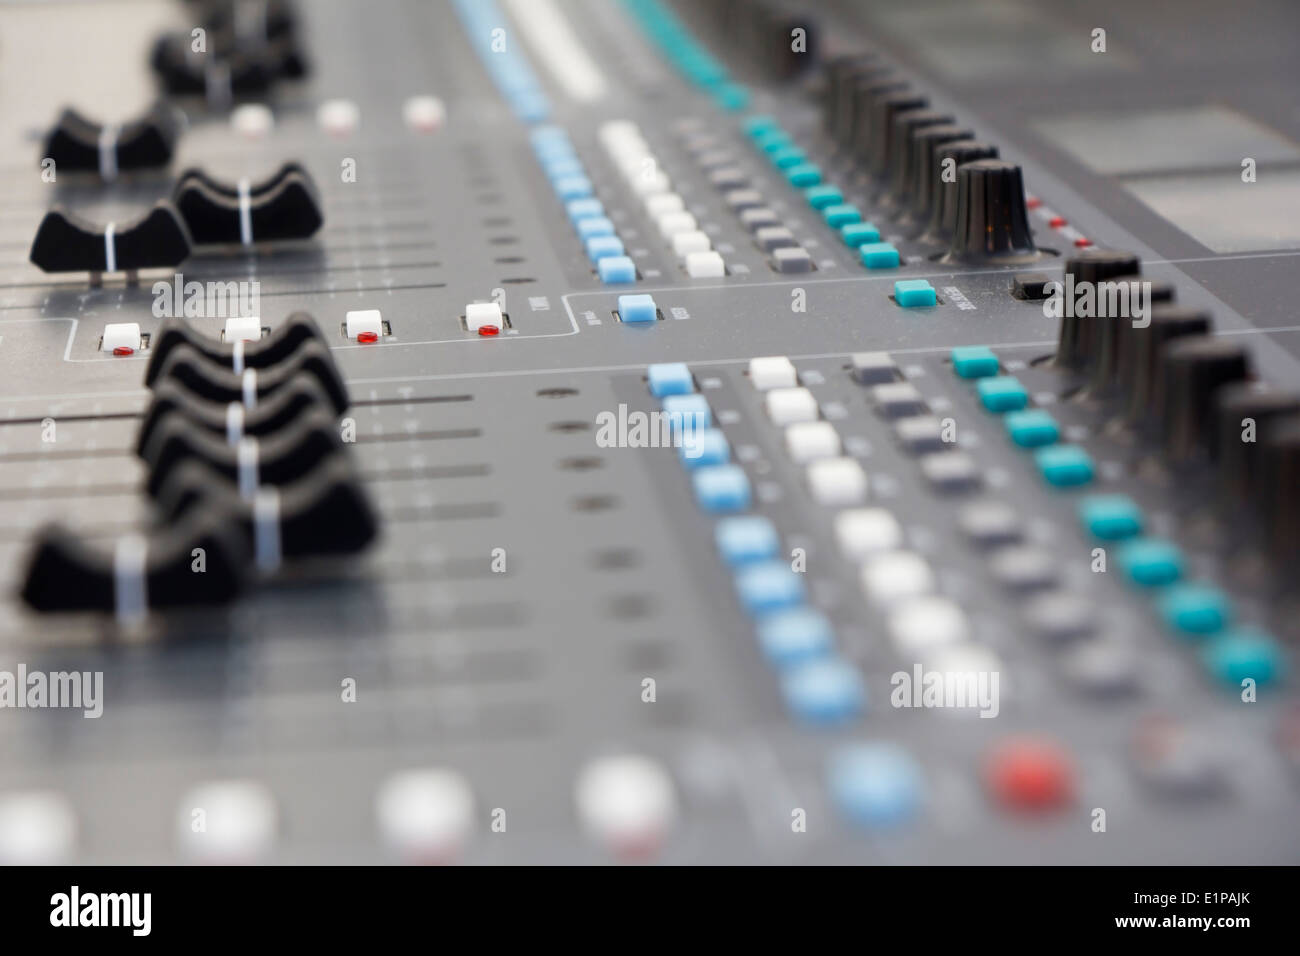 Musik mischen Schreibtisch Großgeräte für sound-Control Tasten Equipment für sound-Mixer Steuerung Stockfoto